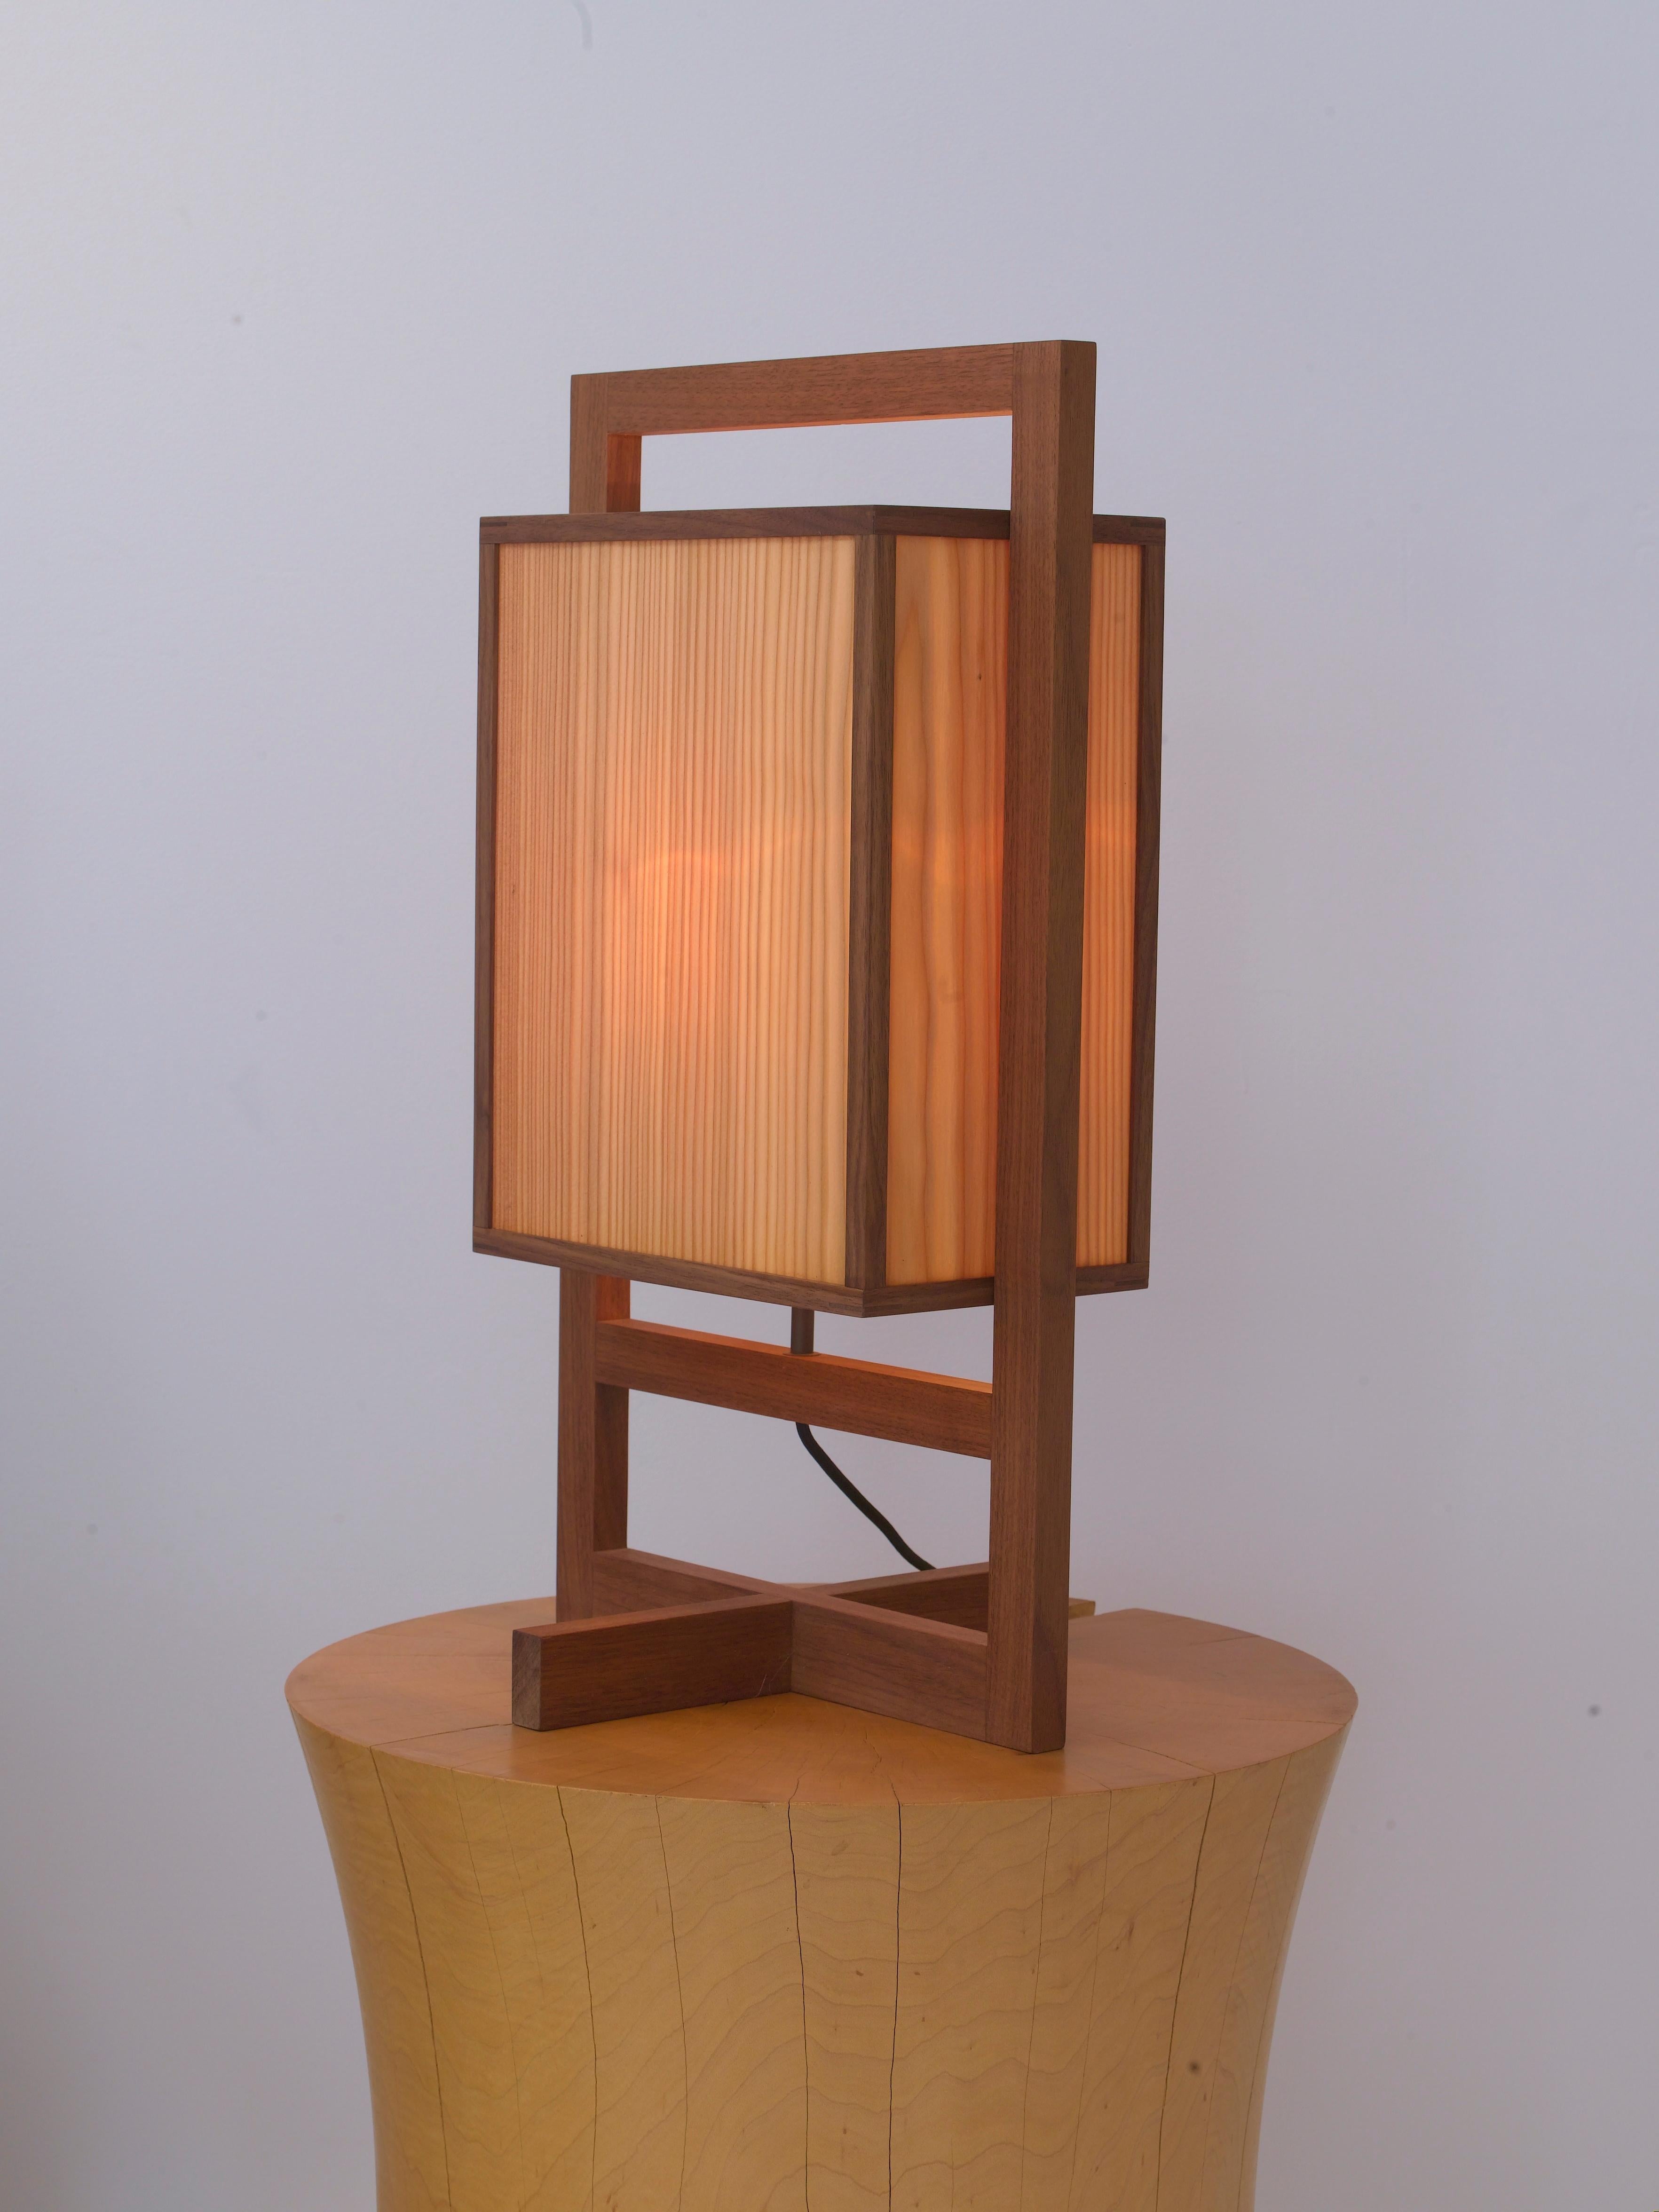 La petite lampe en forme de boîte fait partie d'un groupe de lampes conçues par Chris Lehrecke en 2008. Ils ont été influencés par les lanternes japonaises, ainsi que par les premiers modèles de Frank Lloyd Wright. Les lampes sont magnifiquement